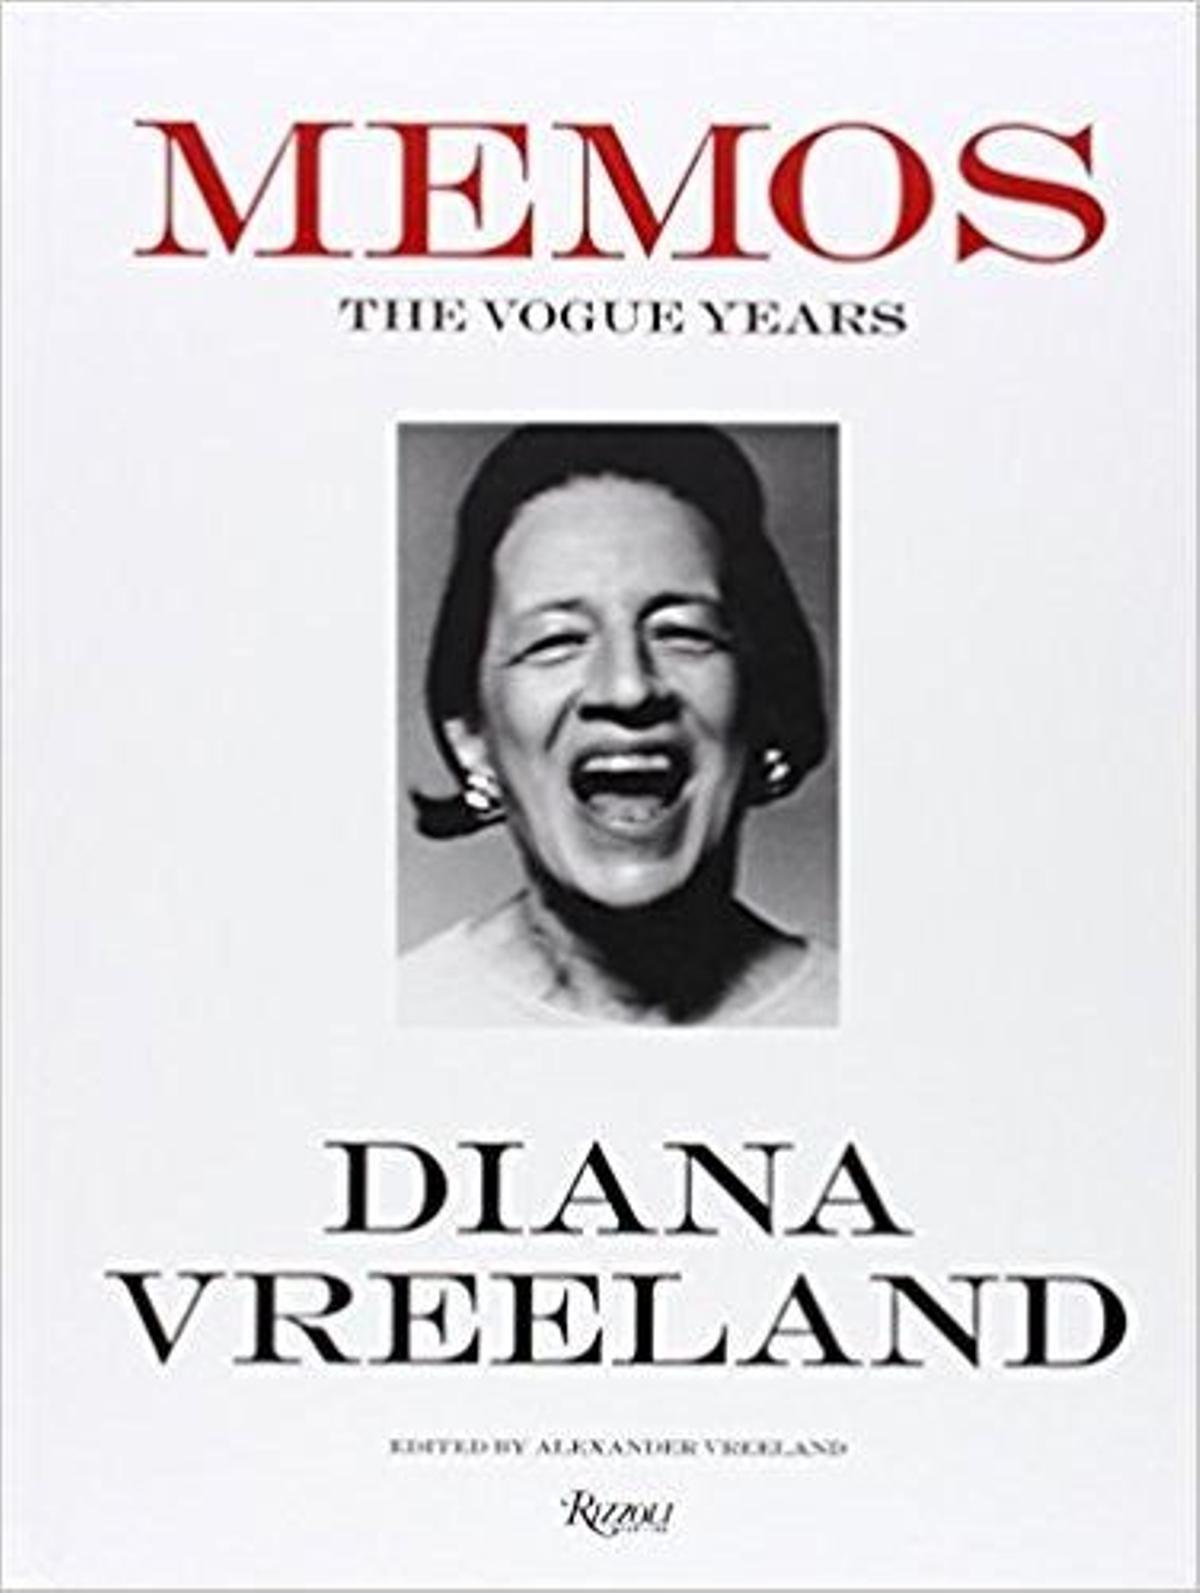 Libro 'Memos' de Diana Vreeland